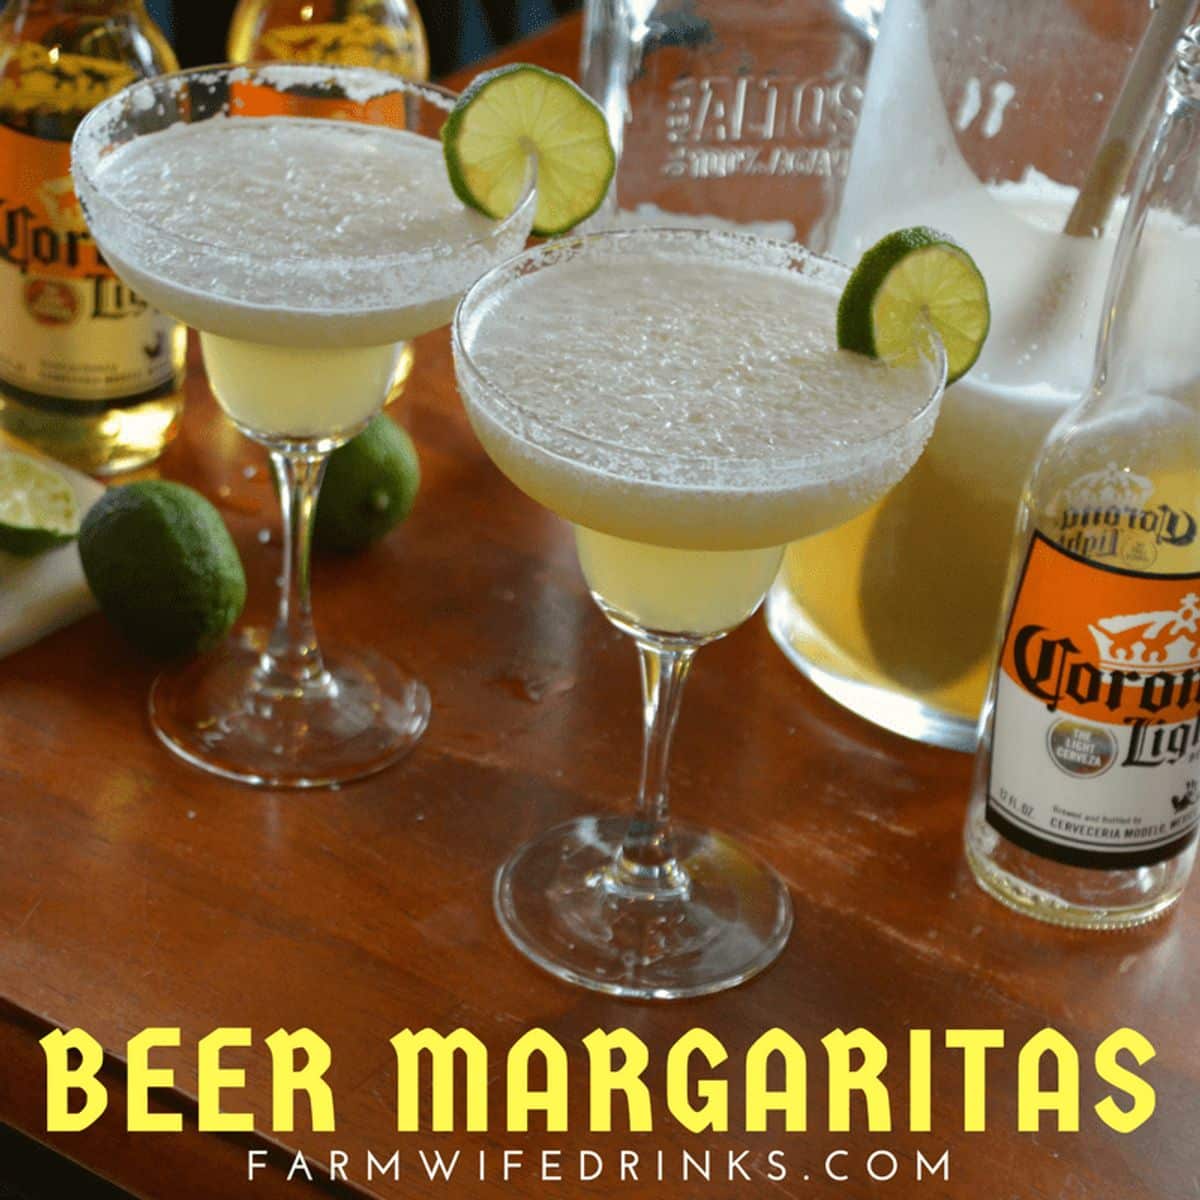 Beer Margaritas - Three Ingredient Margaritas